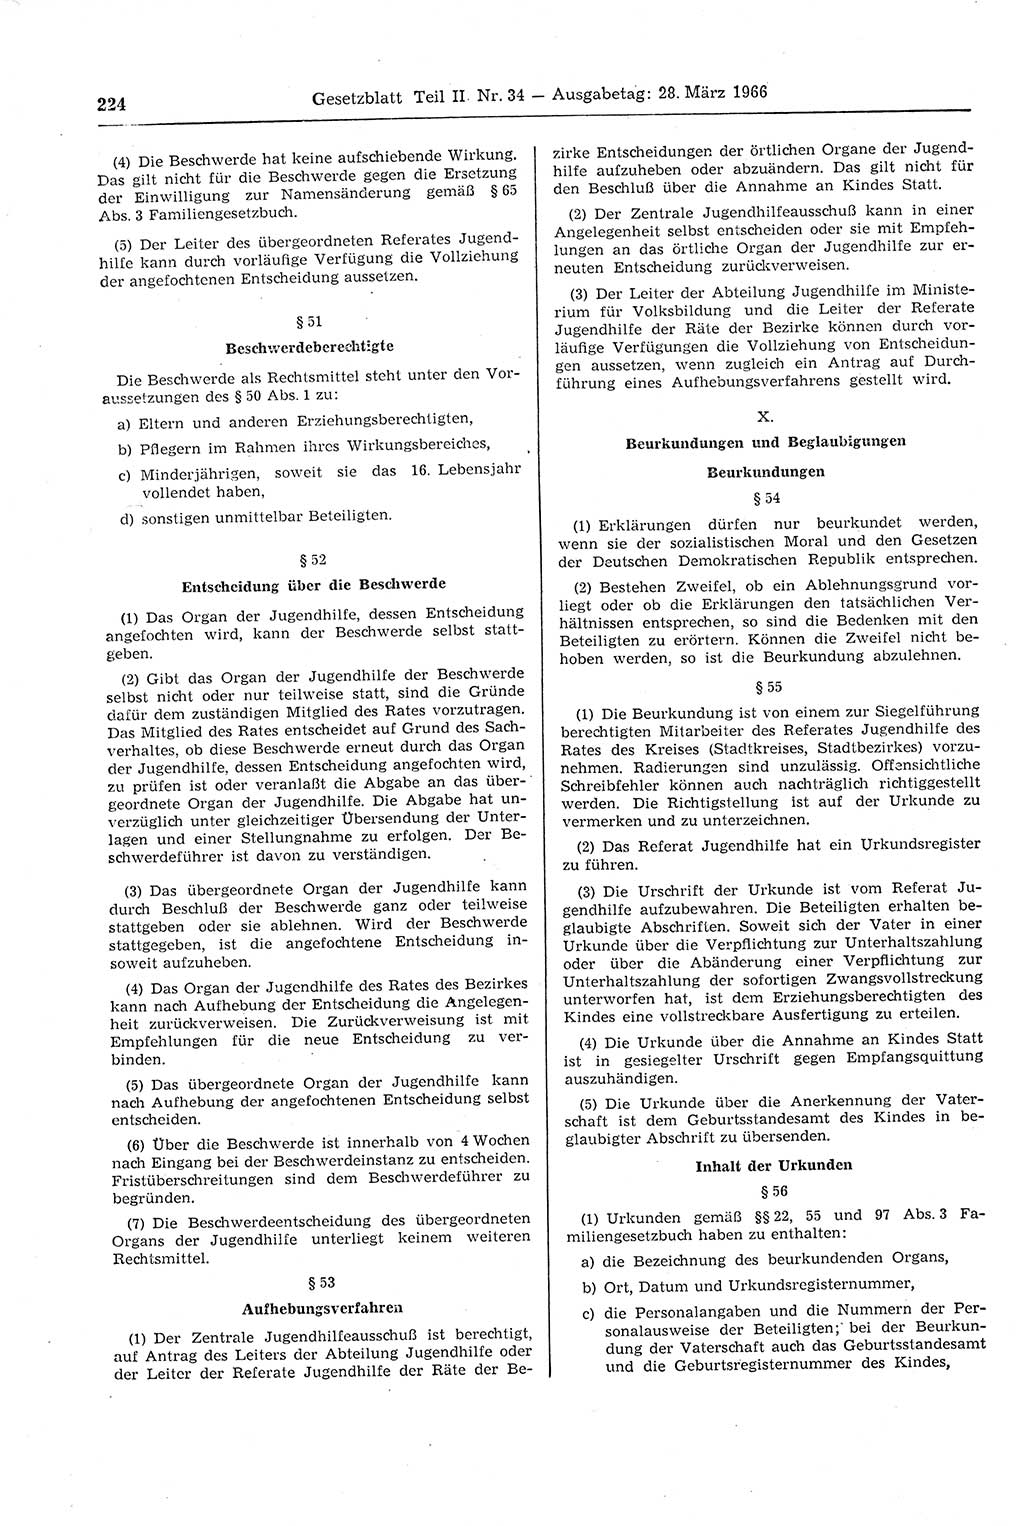 Gesetzblatt (GBl.) der Deutschen Demokratischen Republik (DDR) Teil ⅠⅠ 1966, Seite 224 (GBl. DDR ⅠⅠ 1966, S. 224)